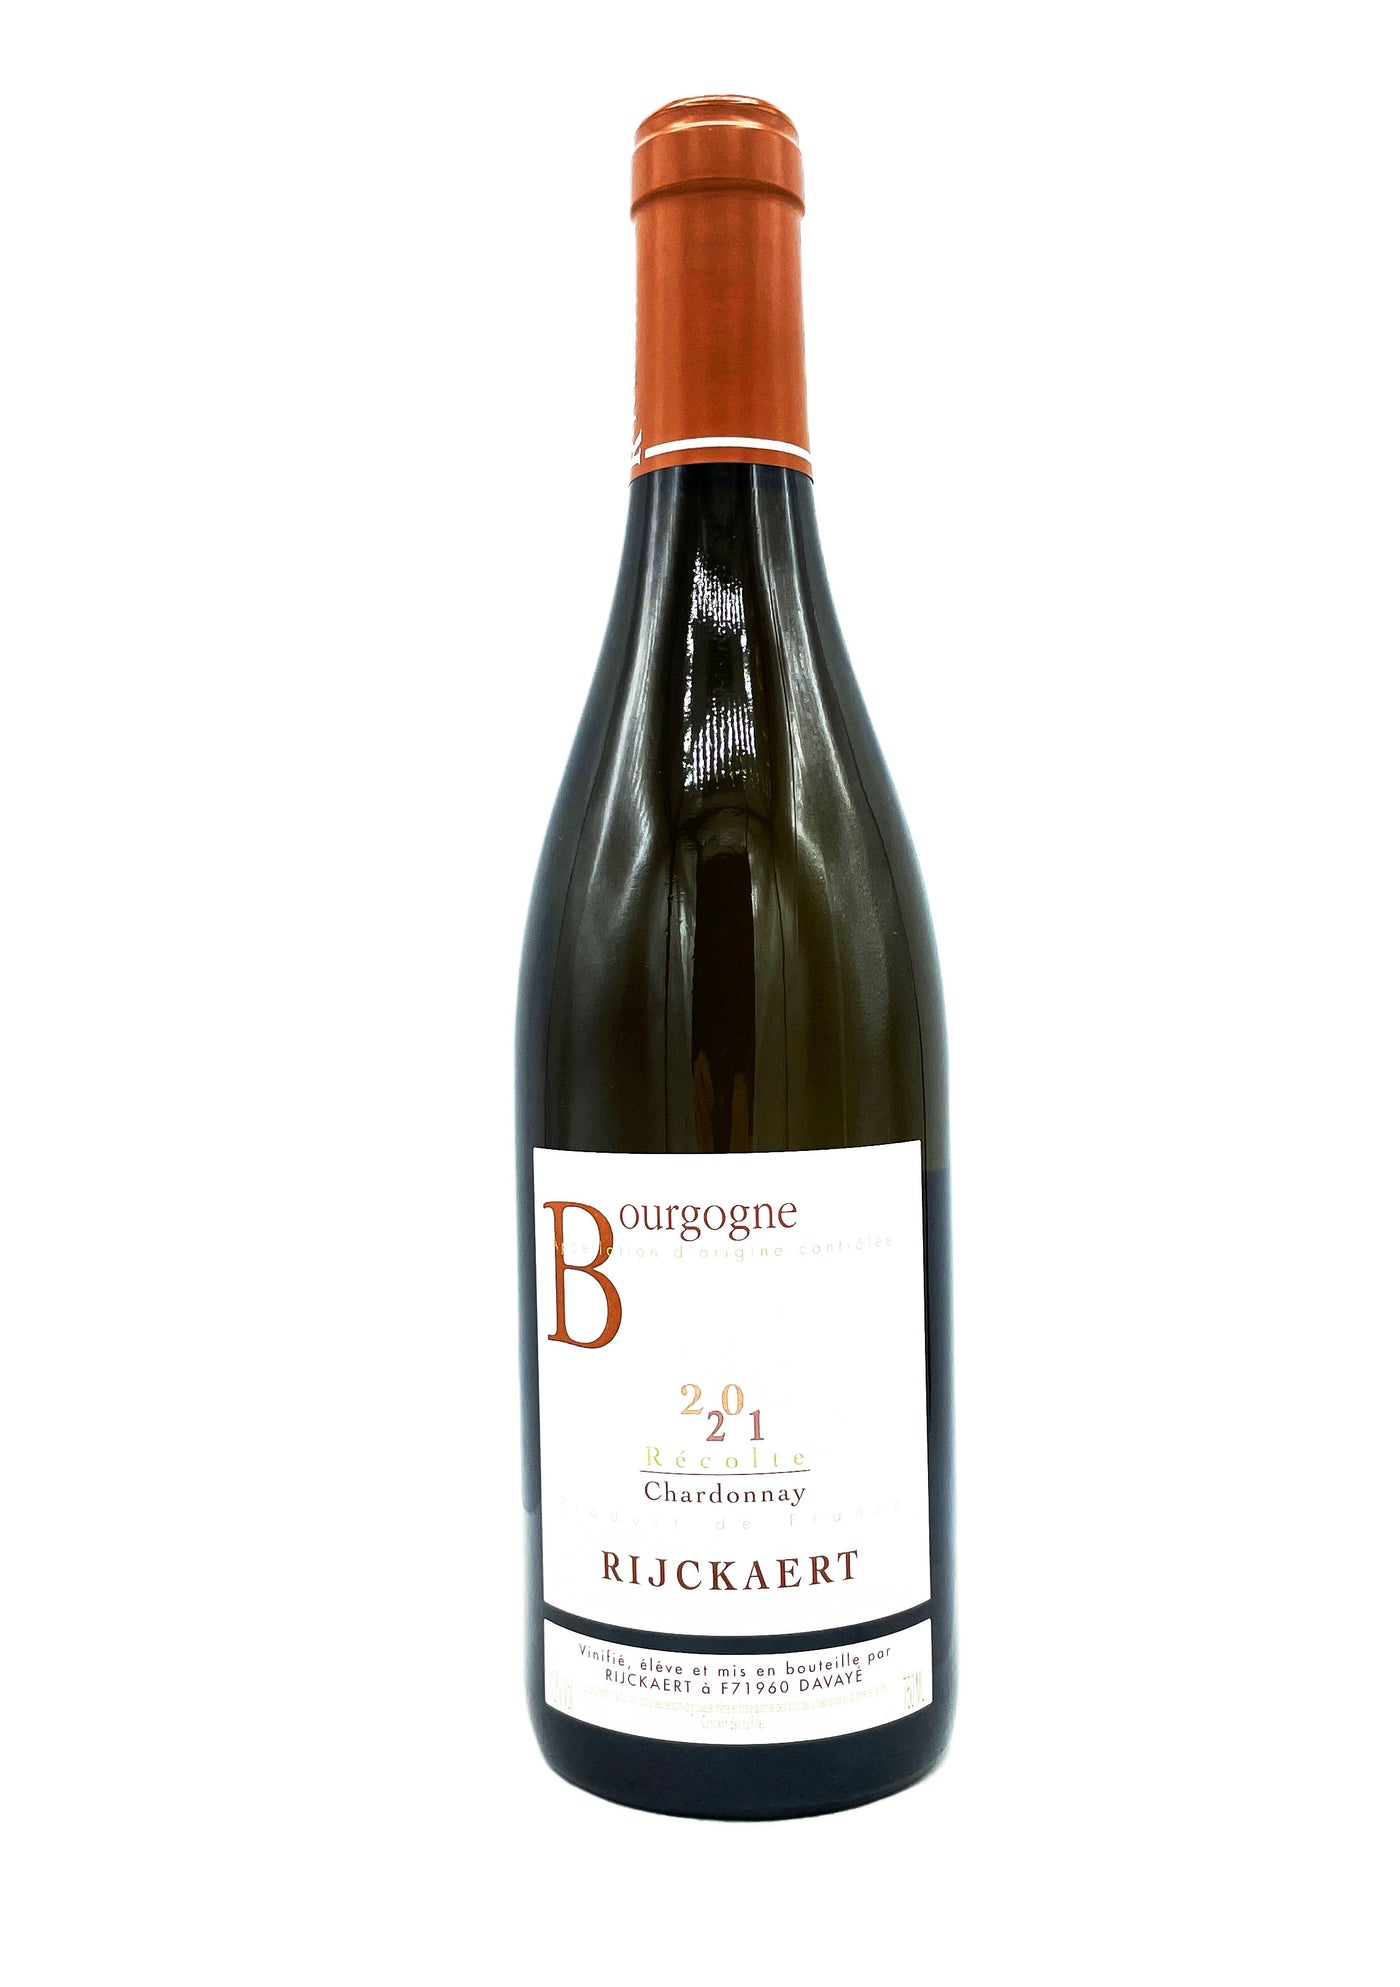 Domaine Rijckaert Bourgogne Récolte Chardonnay 2021